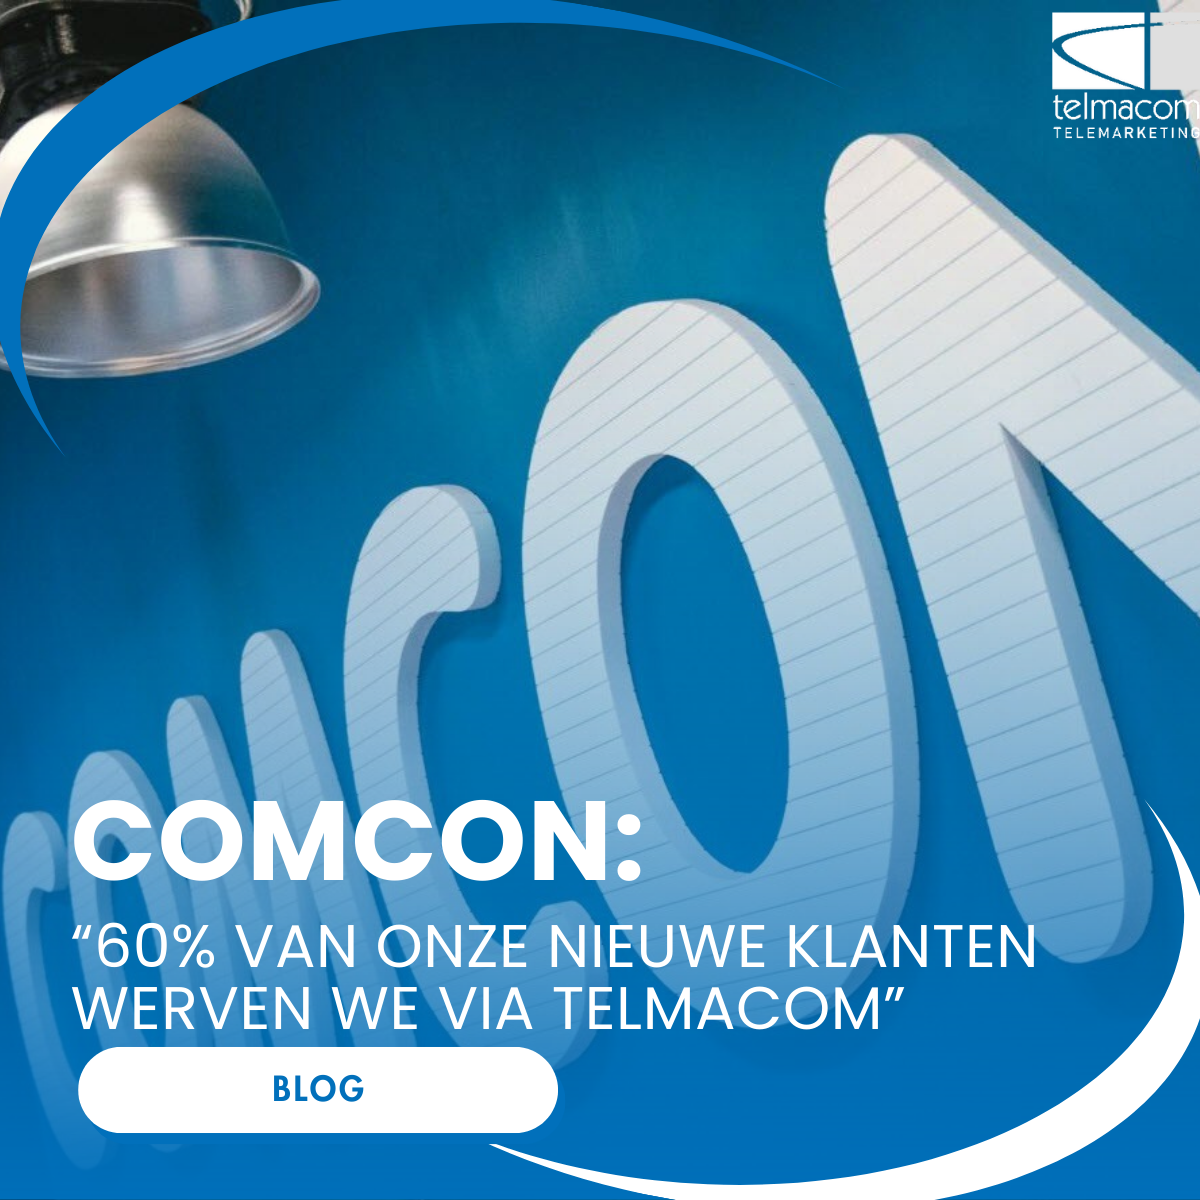 “60% van onze nieuwe klanten werven we via Telmacom” 